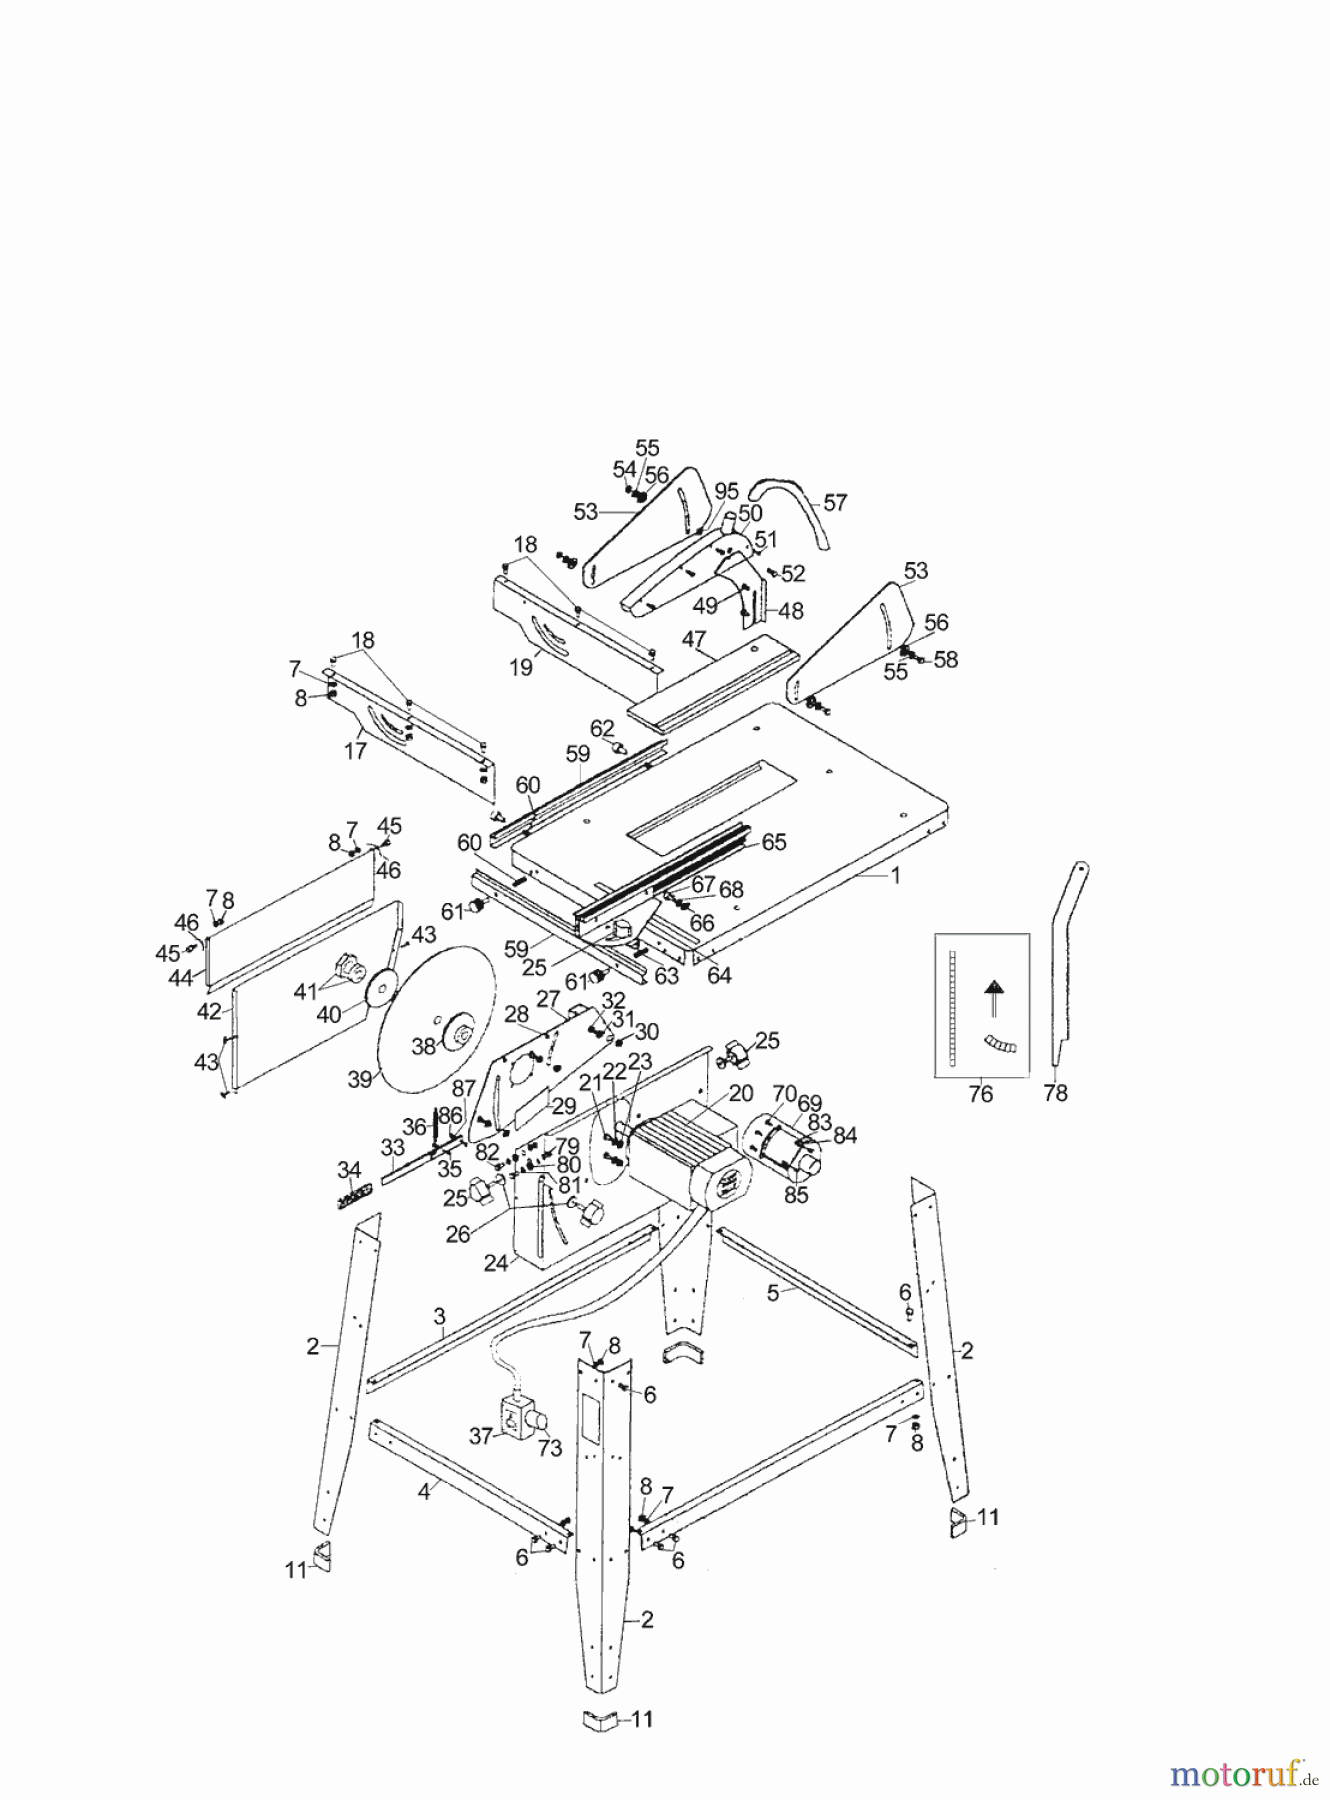  AL-KO Heimwerkertechnik Tischkreissägen TK 2000 Seite 1